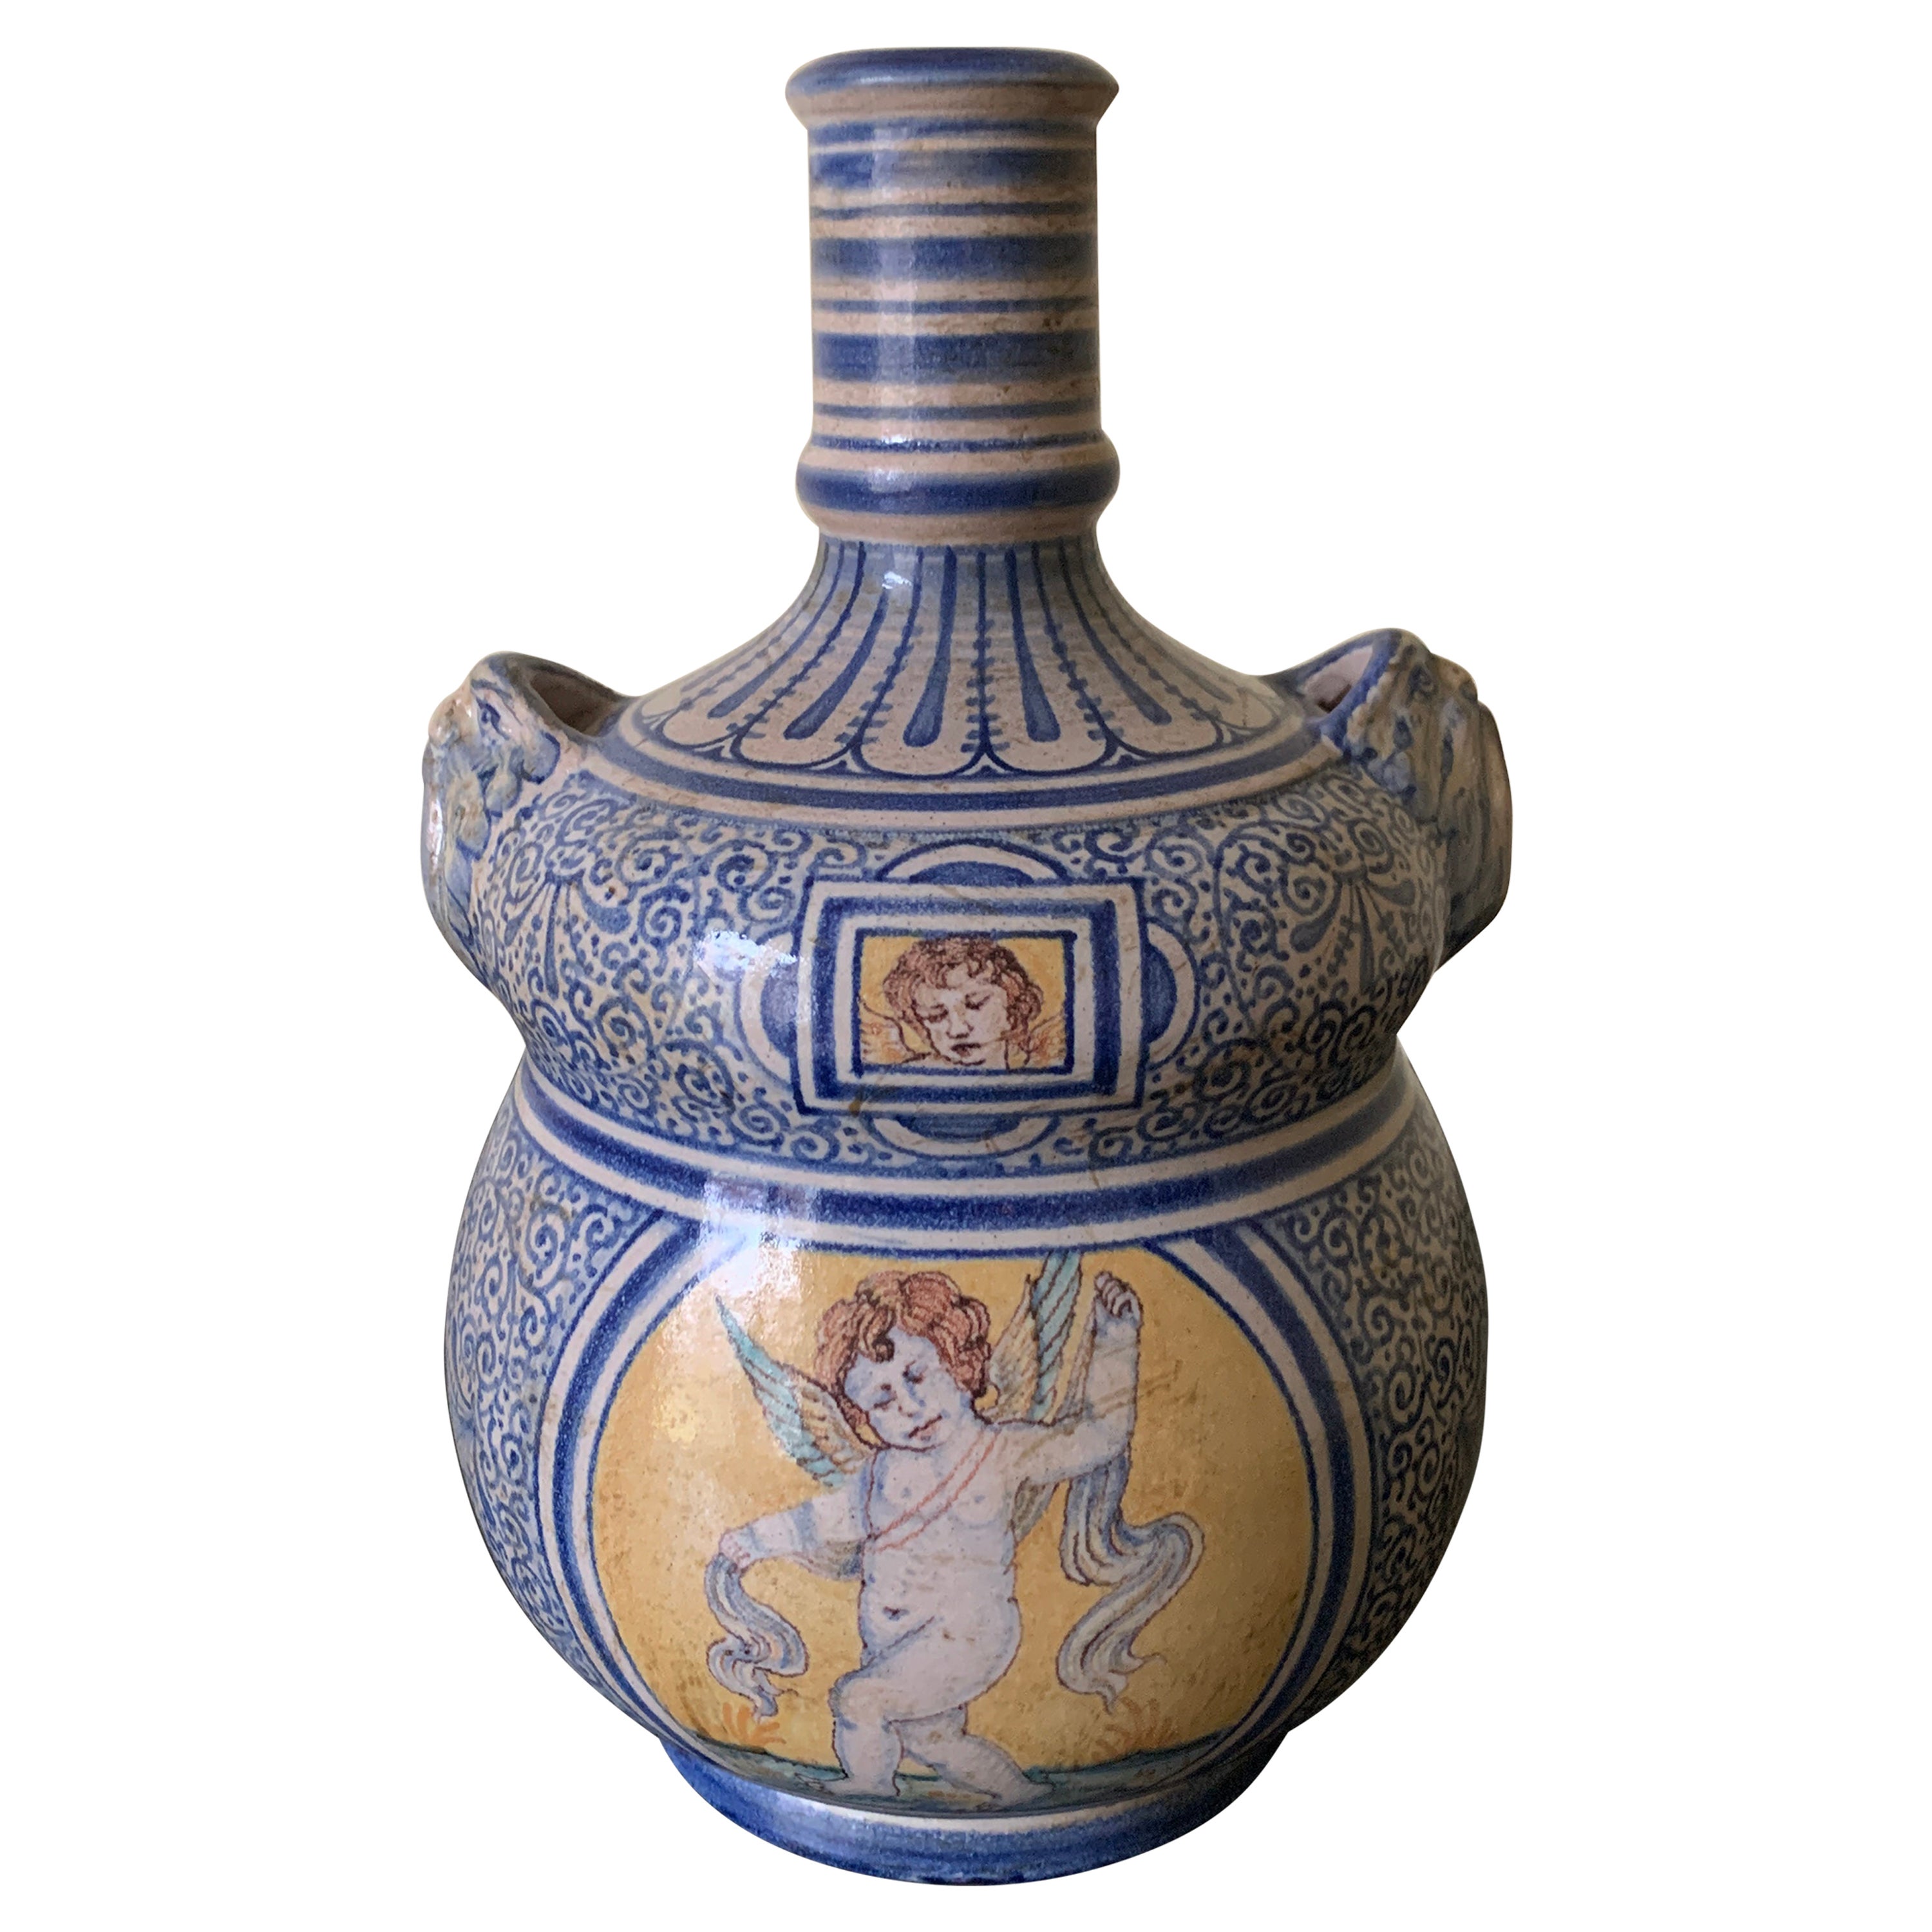 Italienische Provinz Deruta Hand gemalt Fayence Allegorical Keramik Krug Vase